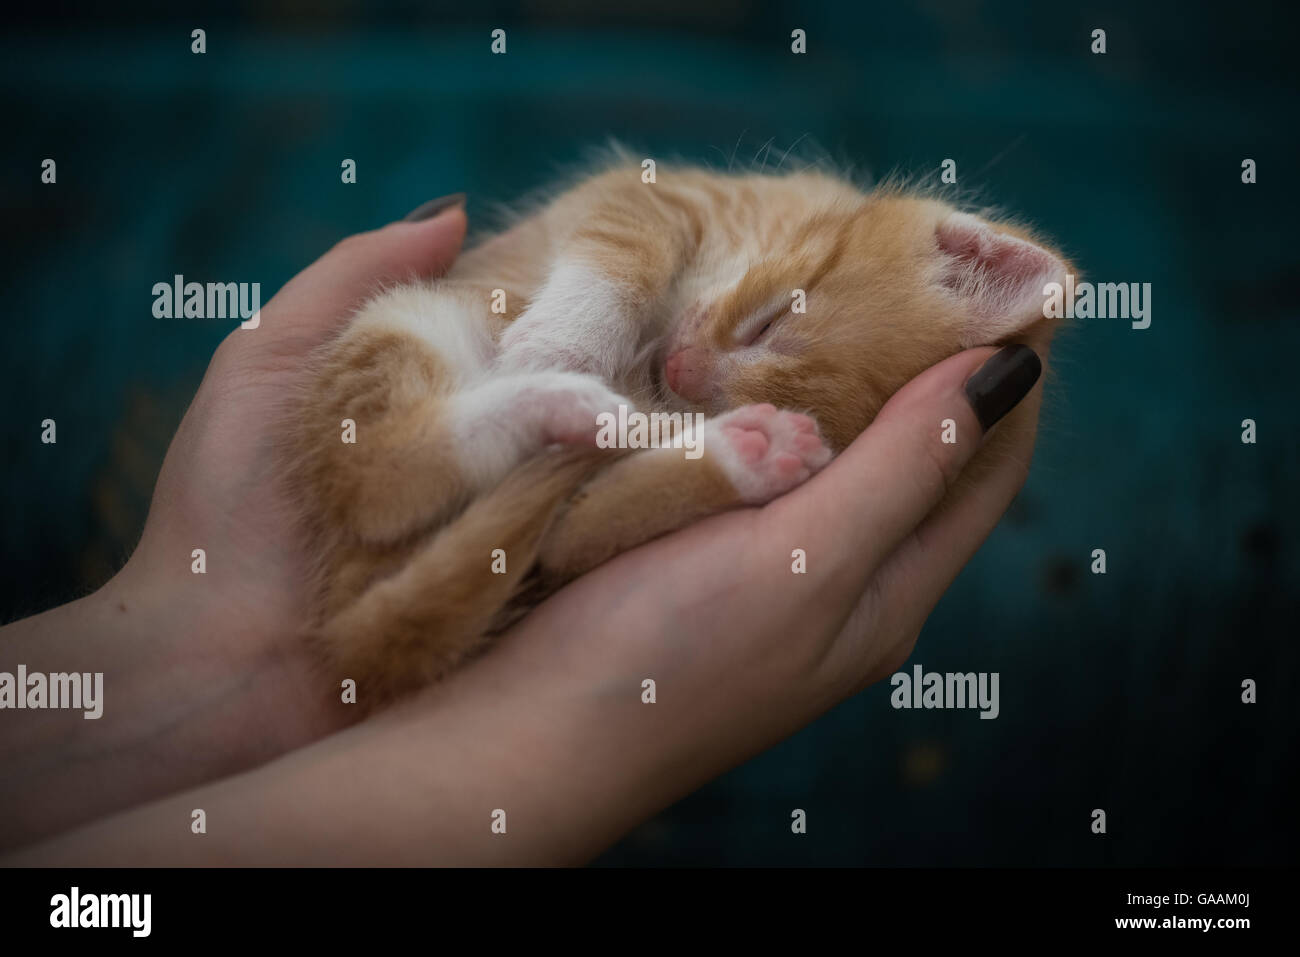 Poco lindo gatito con los ojos cerrados descansa en las manos del hombre Foto de stock